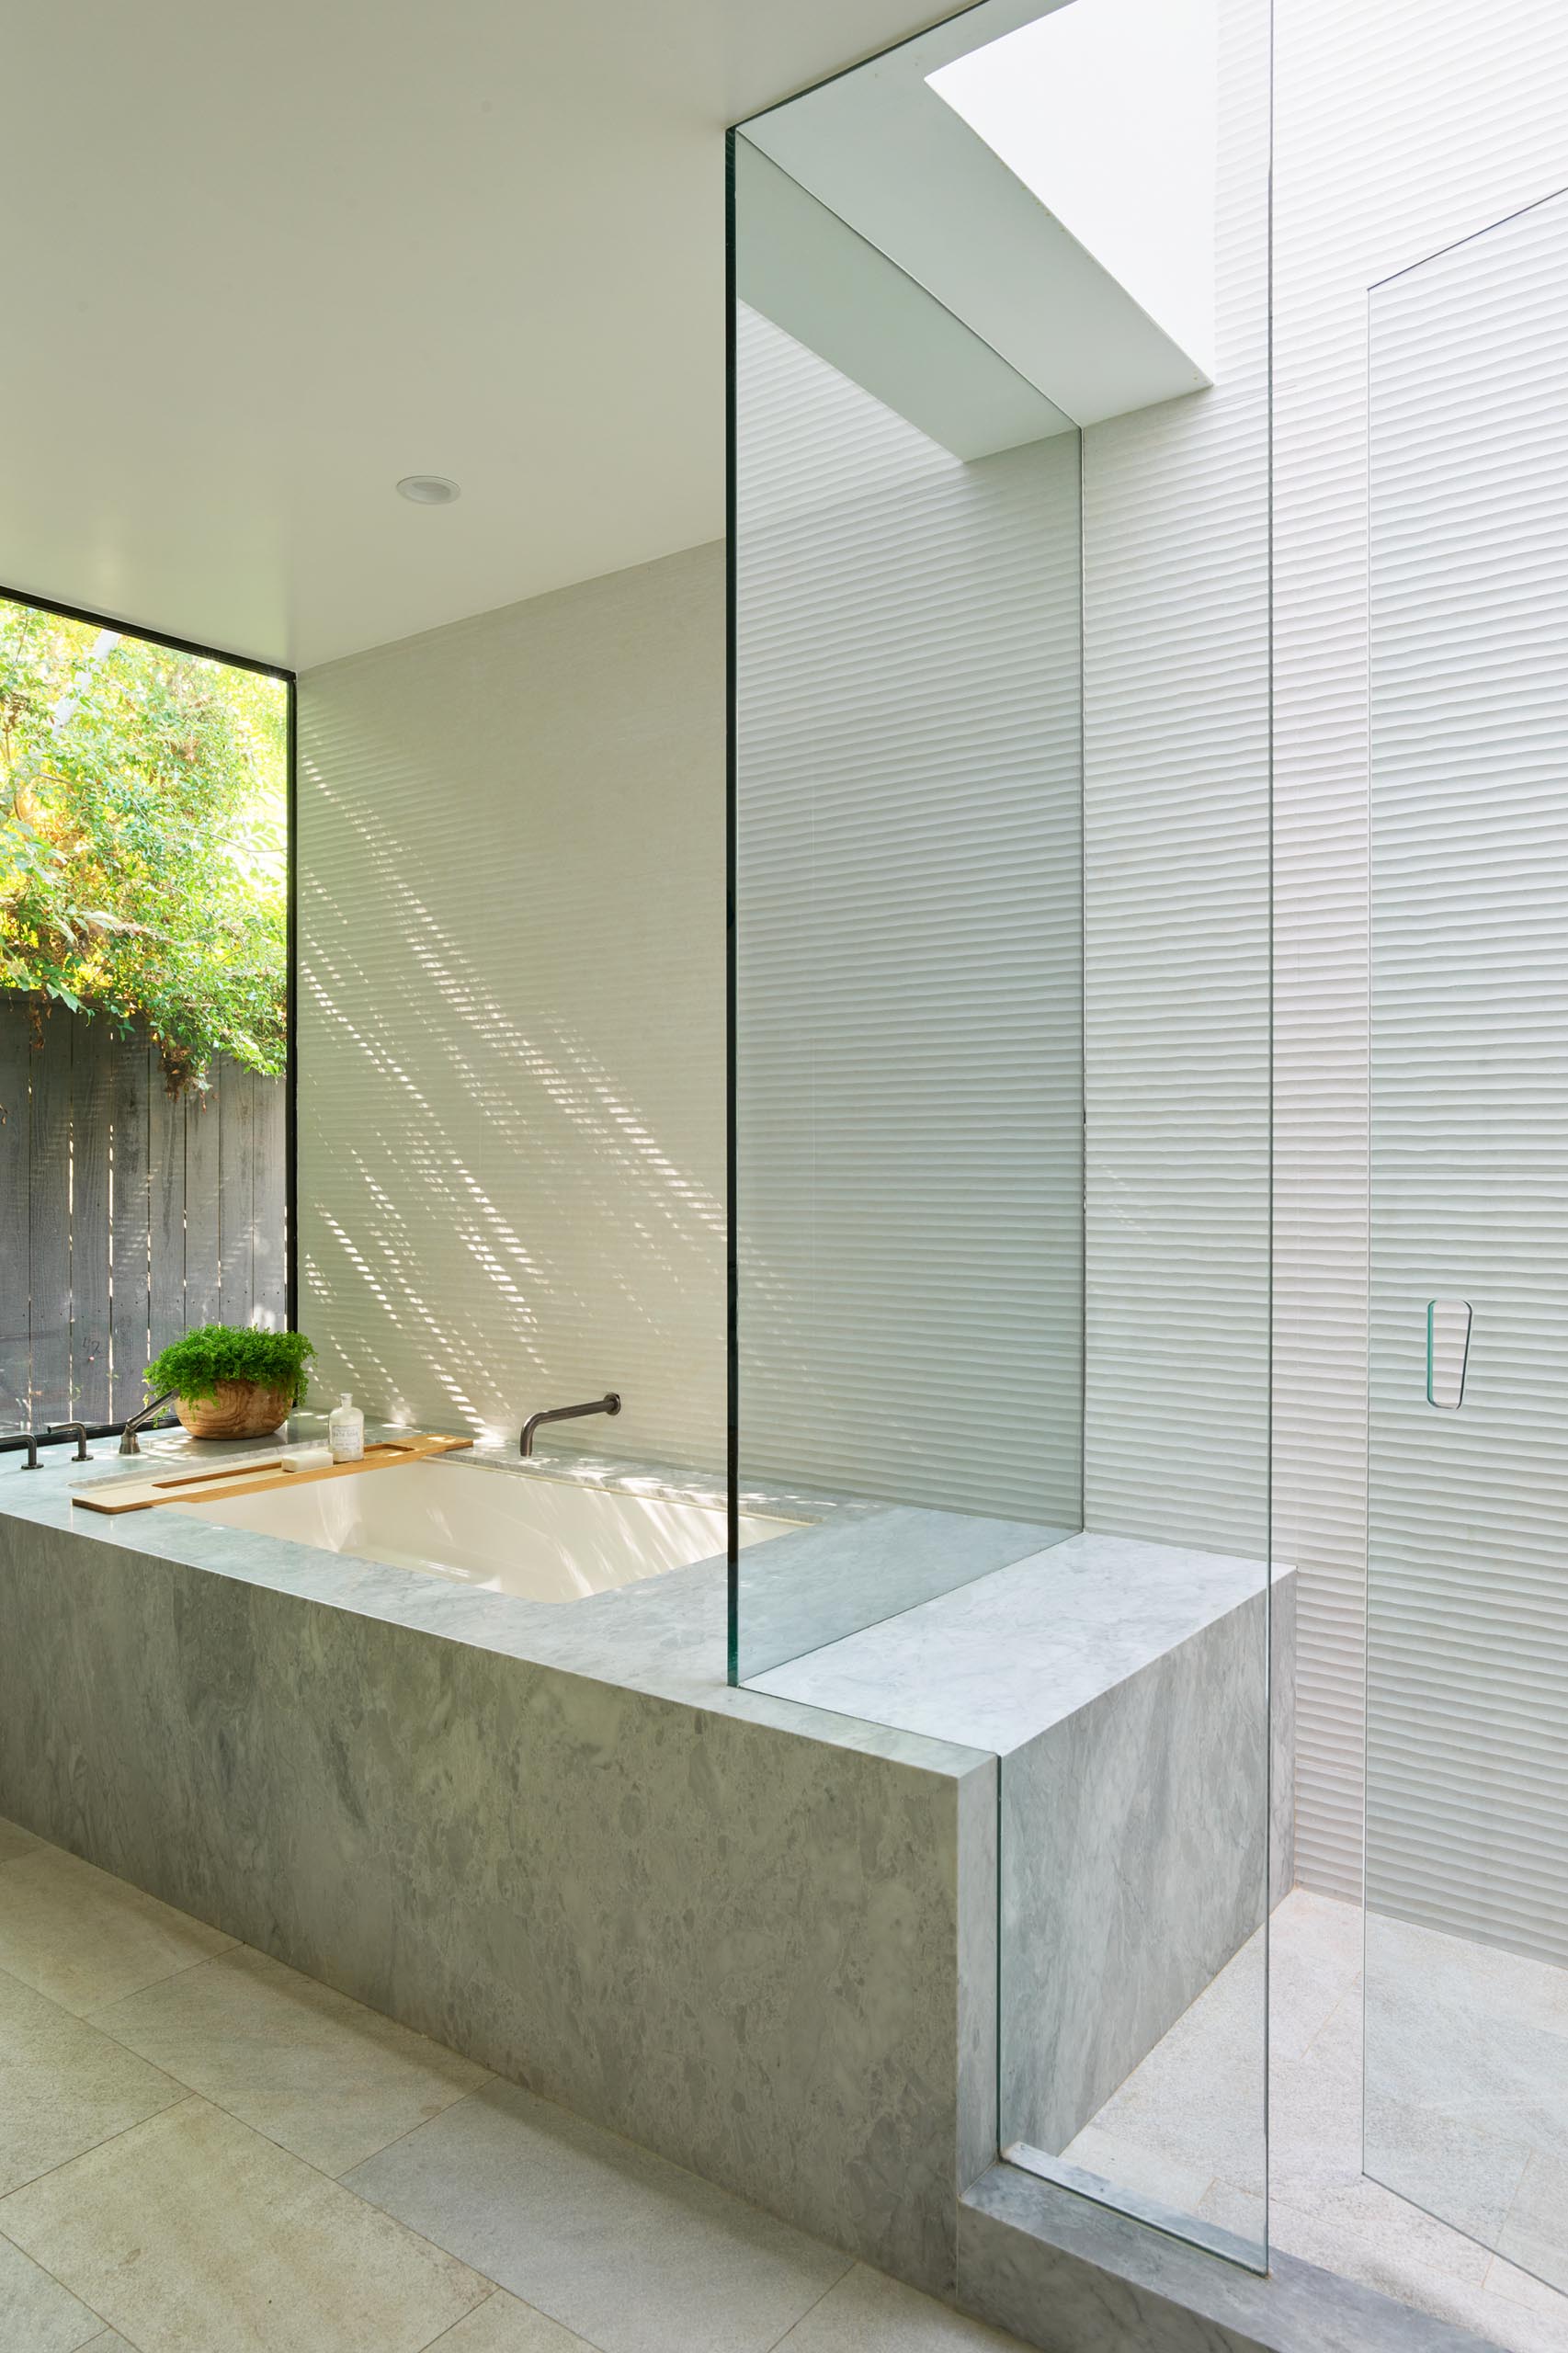 Современная ванная комната с душем и встроенной ванной с видом на растения на улице.